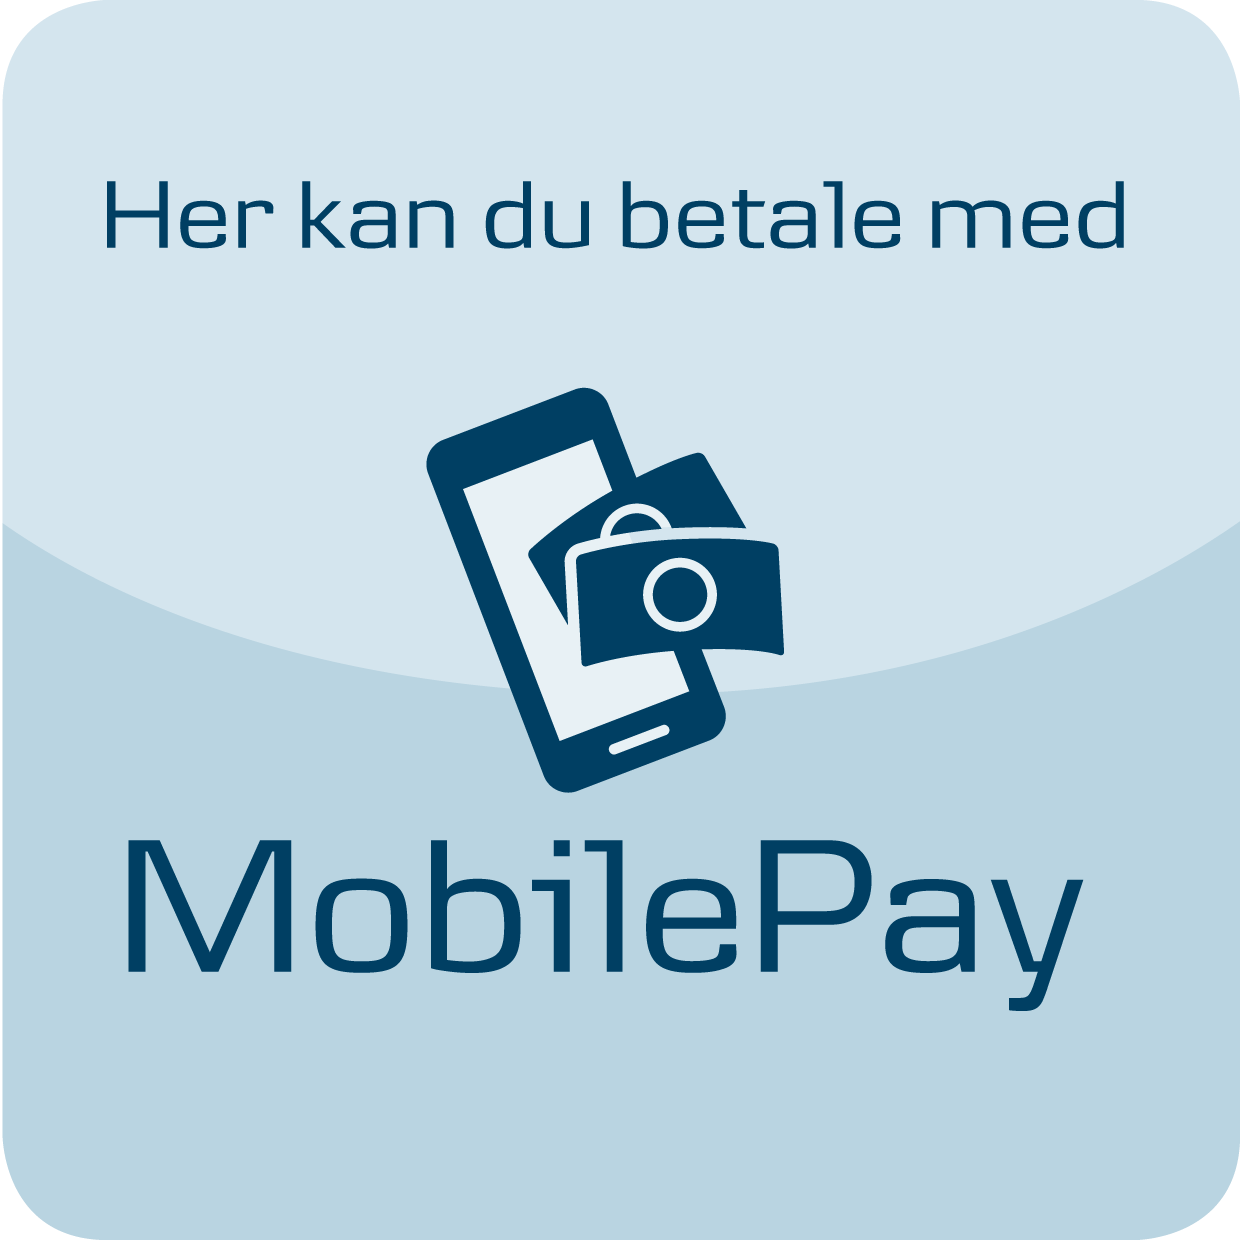 Her kan du betale med MobilePay 1240x1240px runde kanter